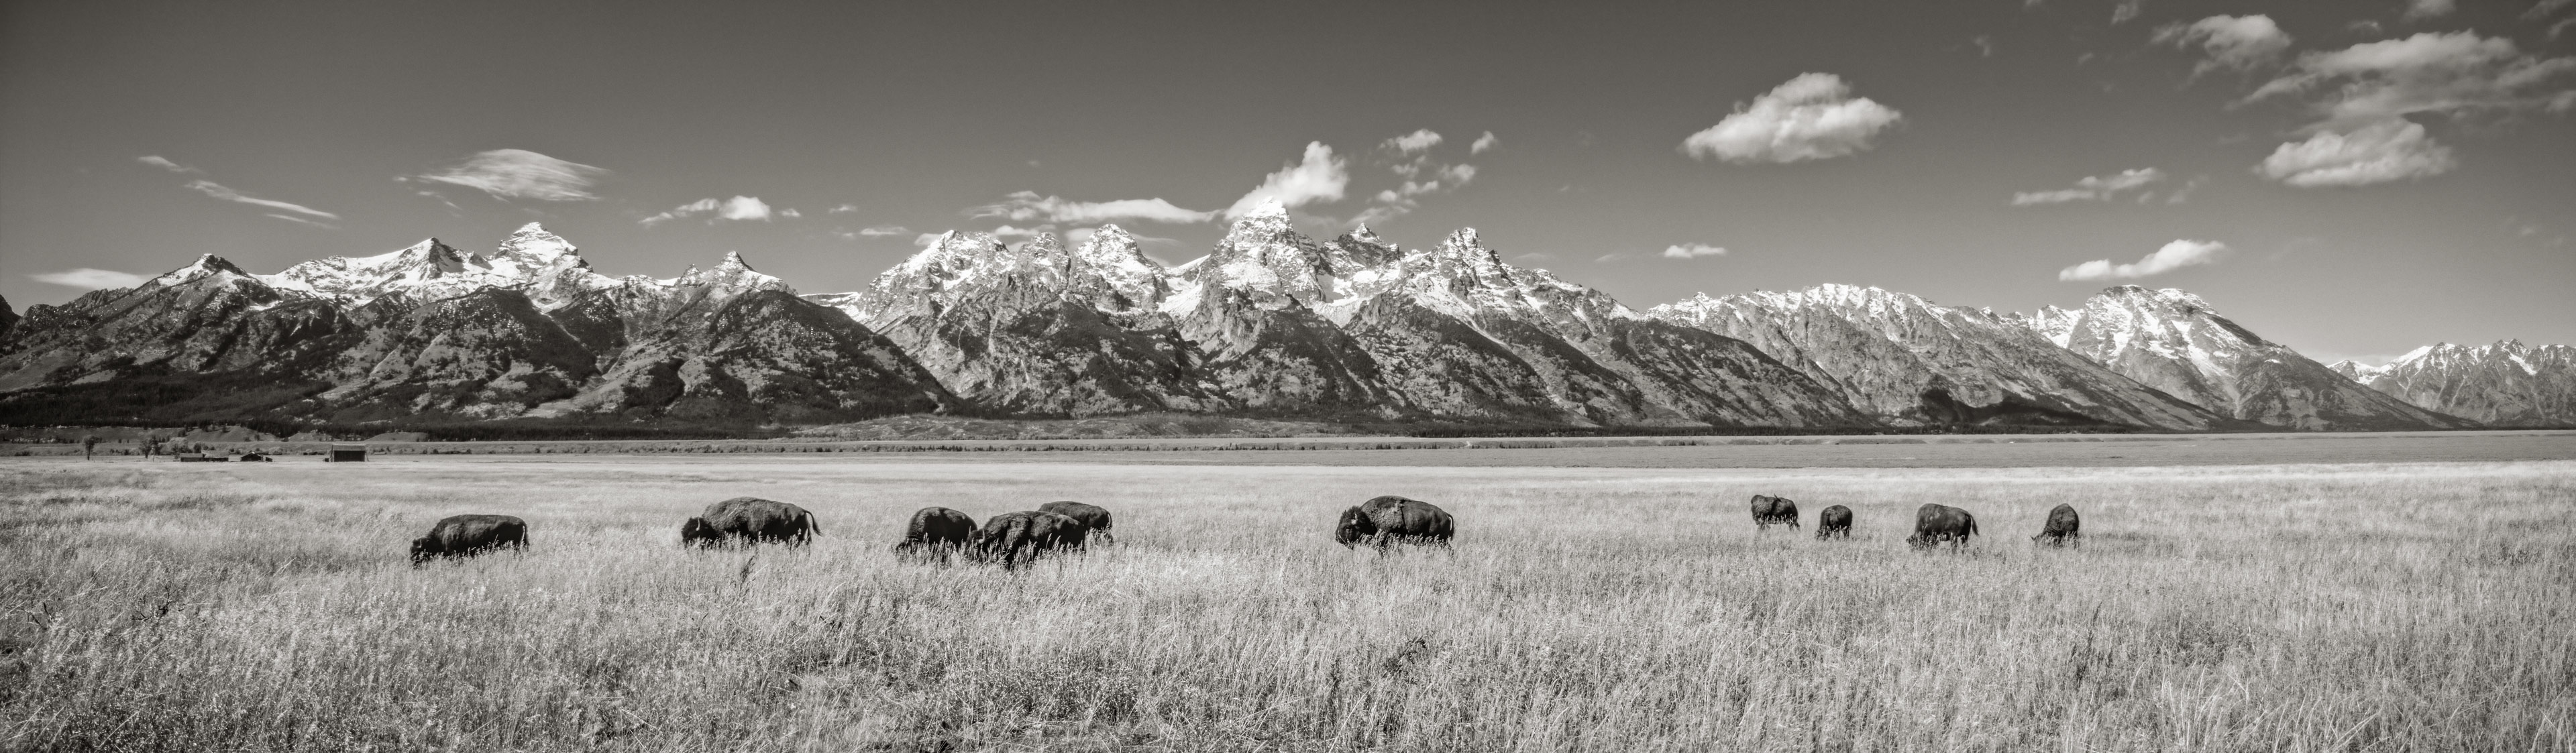 Bison,  Grand Teton National Park, Wyoming, USA (27989.BW)